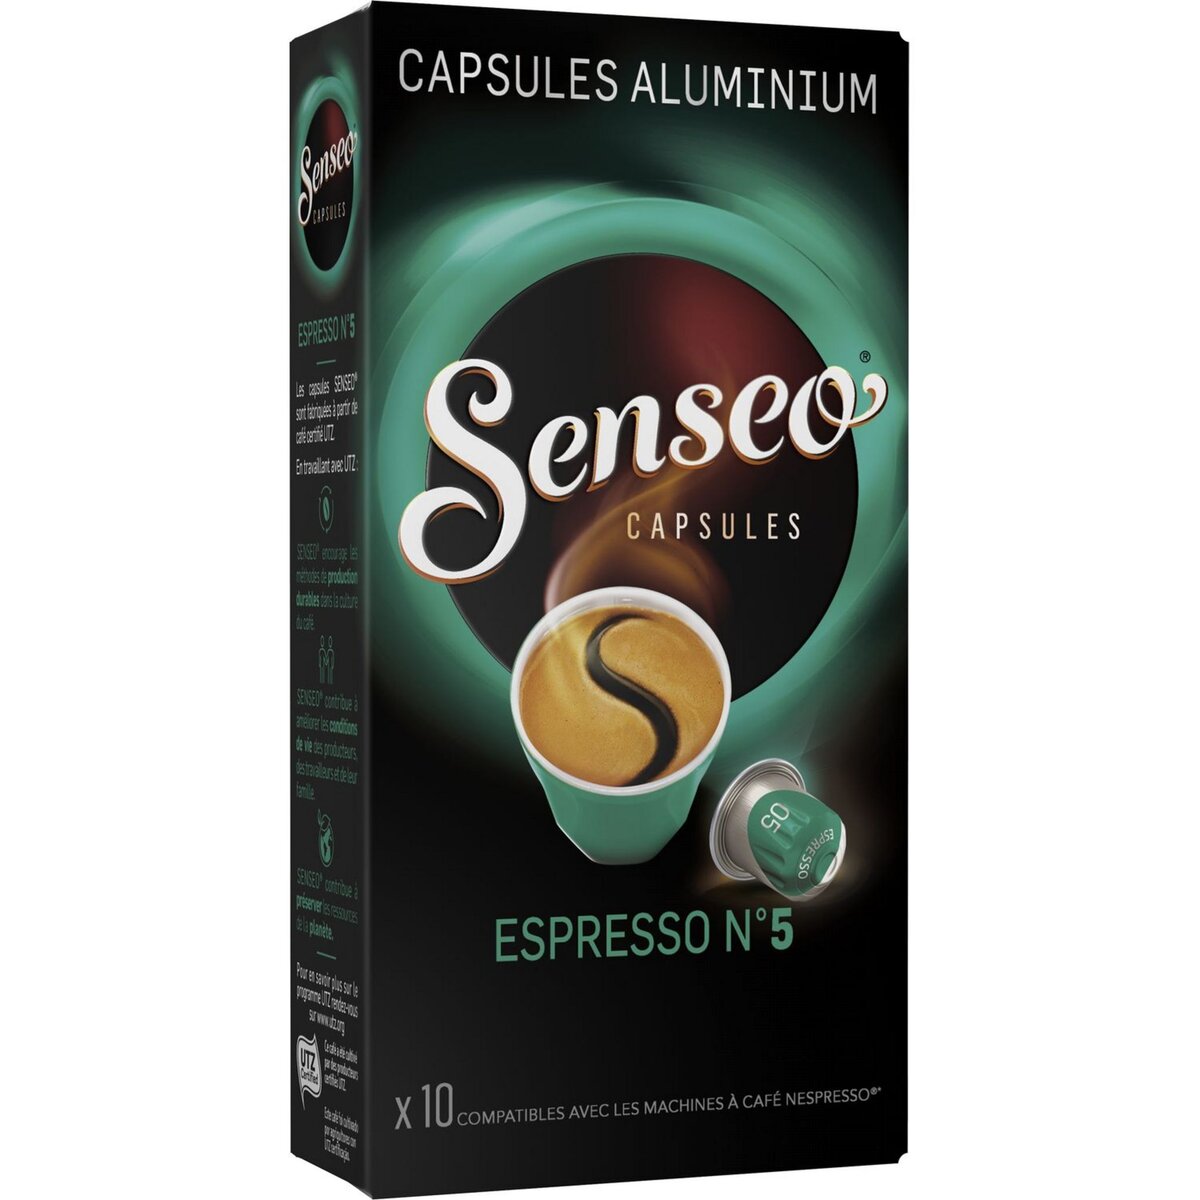 SENSEO Capsules de café espresso n5 compatible Nespresso 10 capsules 52g